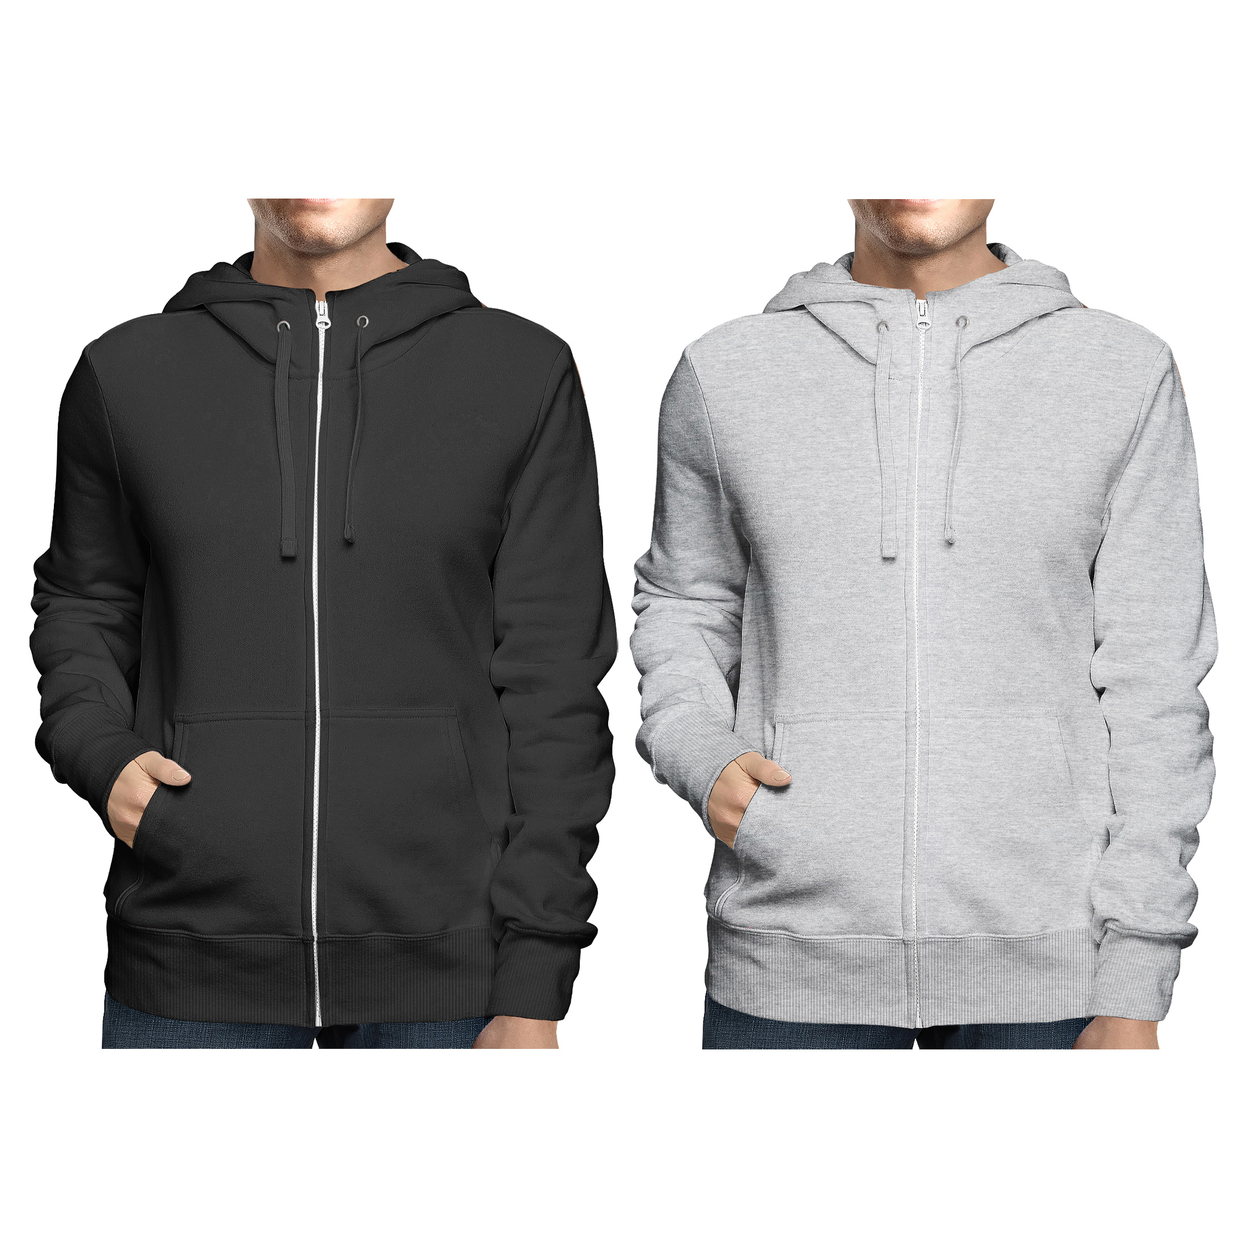 2-Pack: Men's Winter Warm Soft Full Zip-Up Fleece Lined Hoodie Sweatshirt - Black & Grey, Small